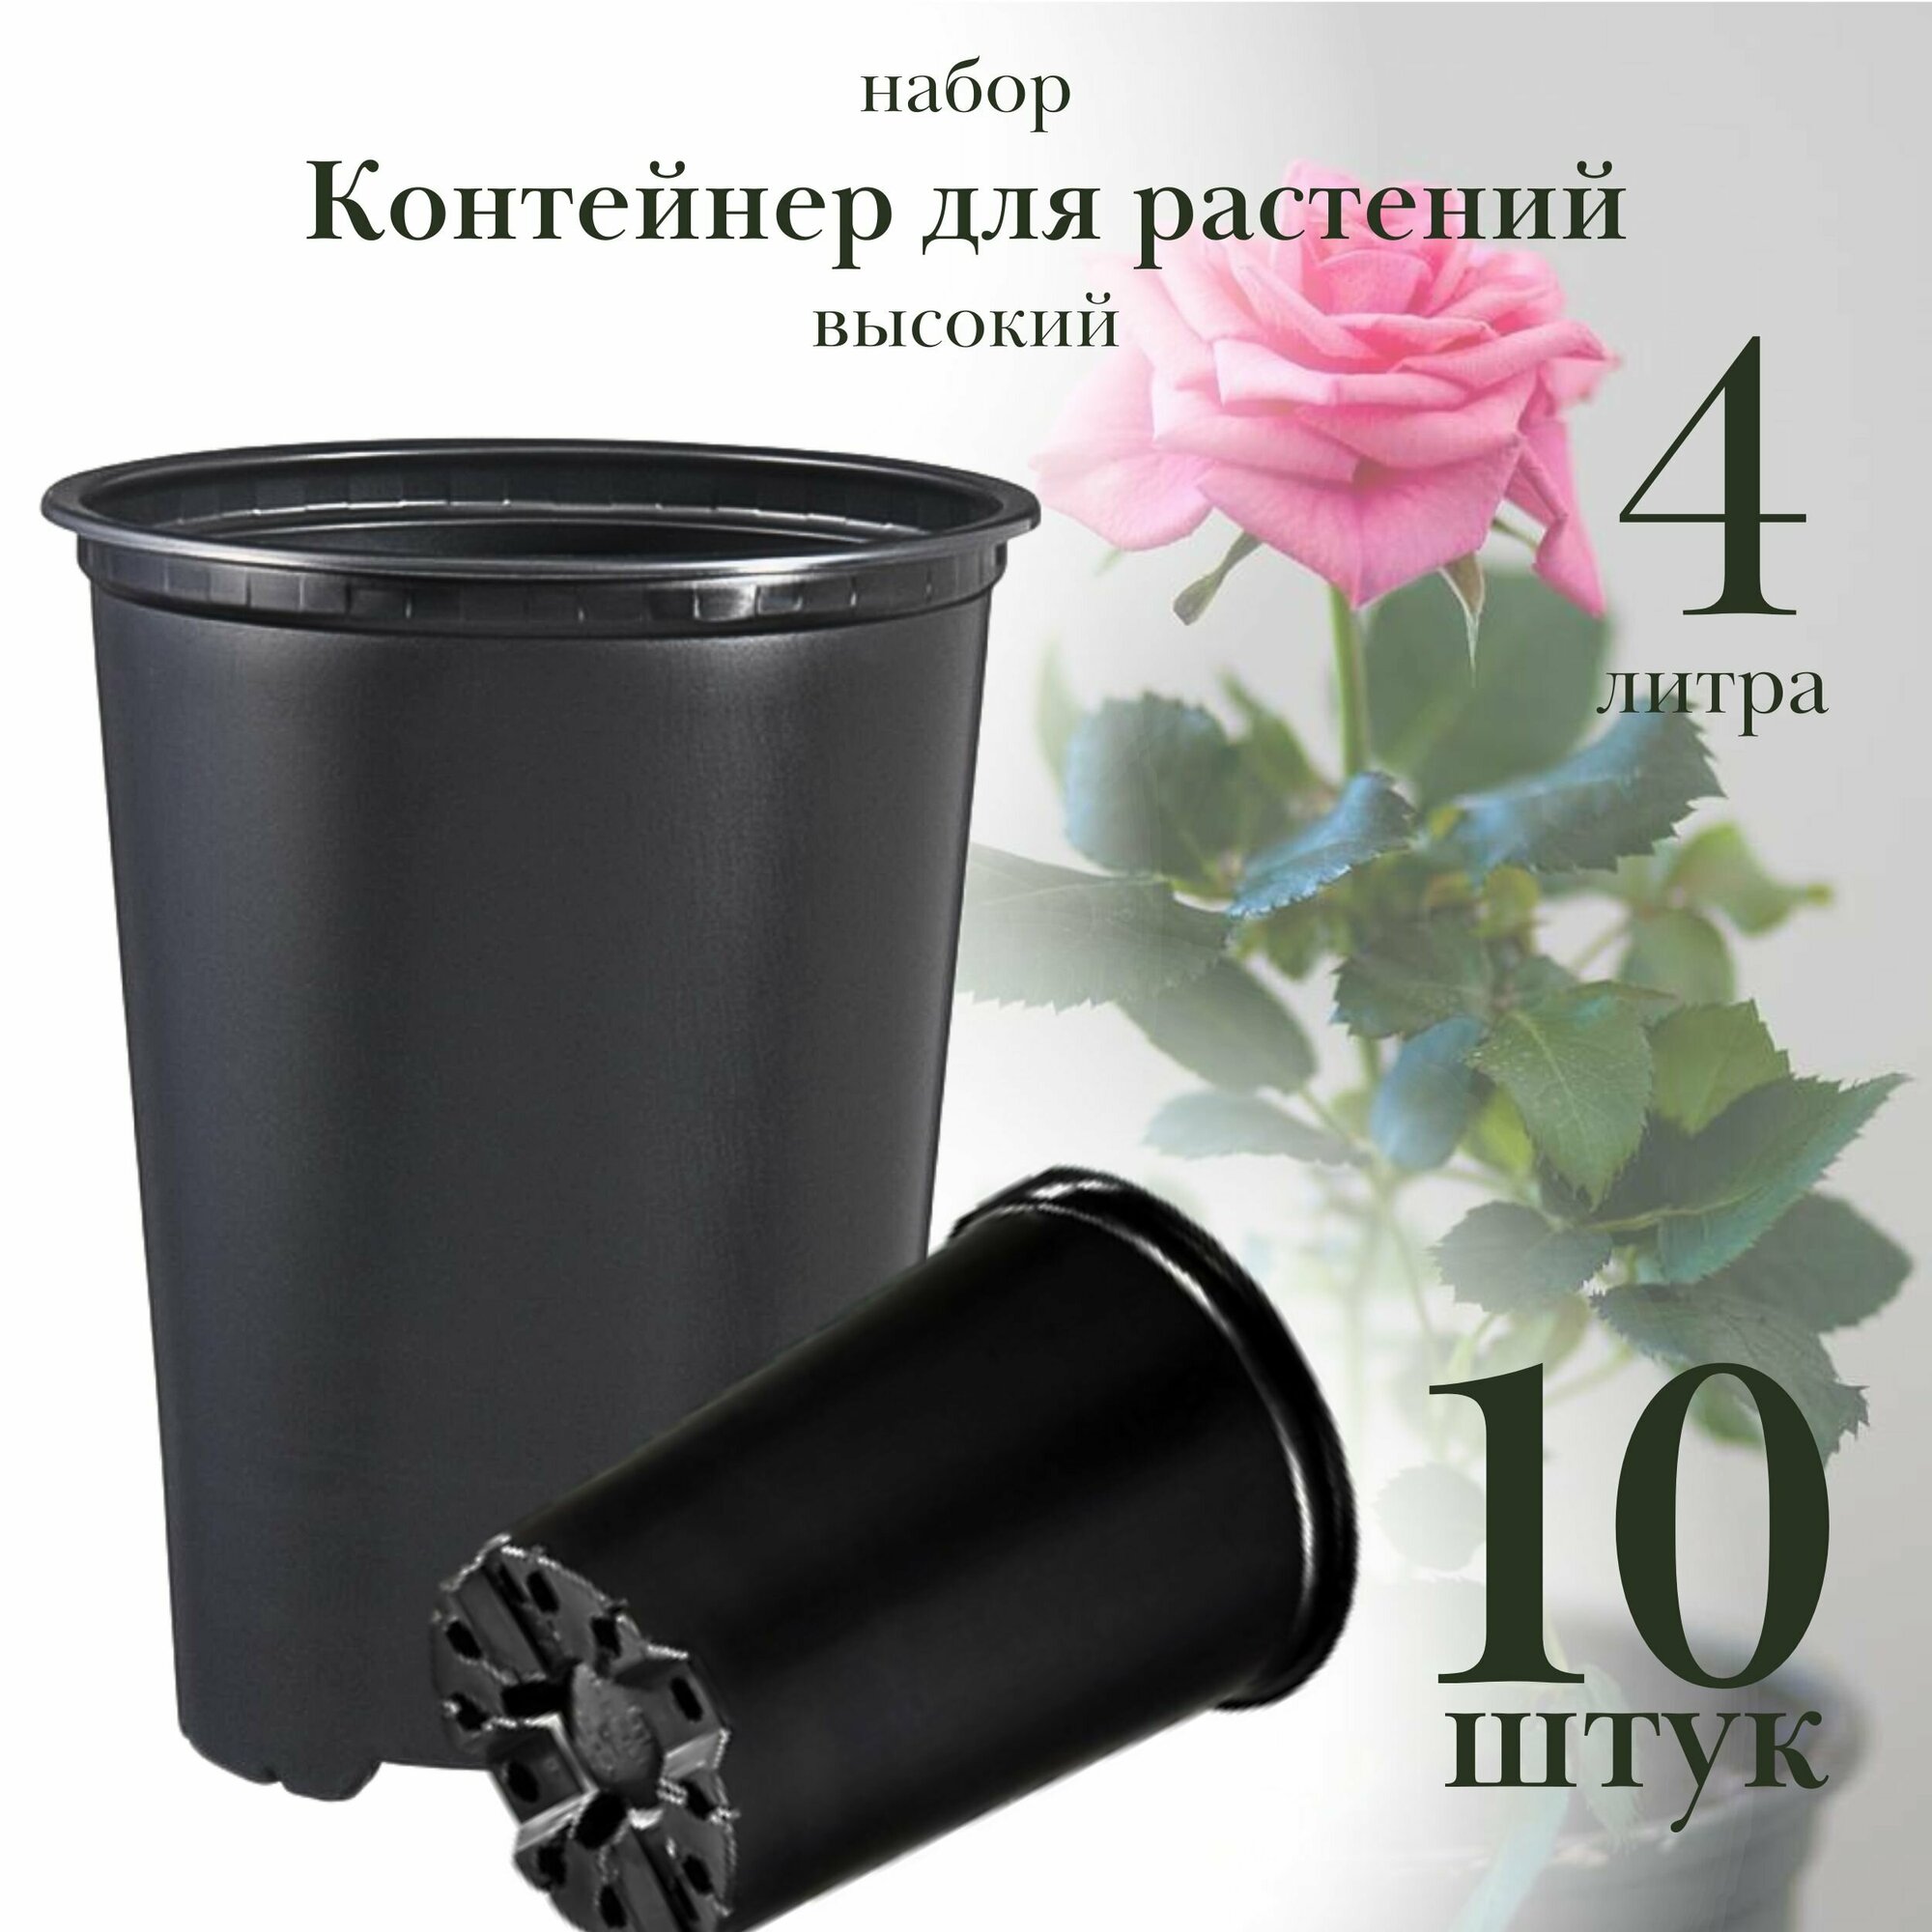 Горшок для растений 4 литра, d 17,5 х h 21 см, высокий, набор 10 штук, контейнер пластиковый для цветов, для саженцев